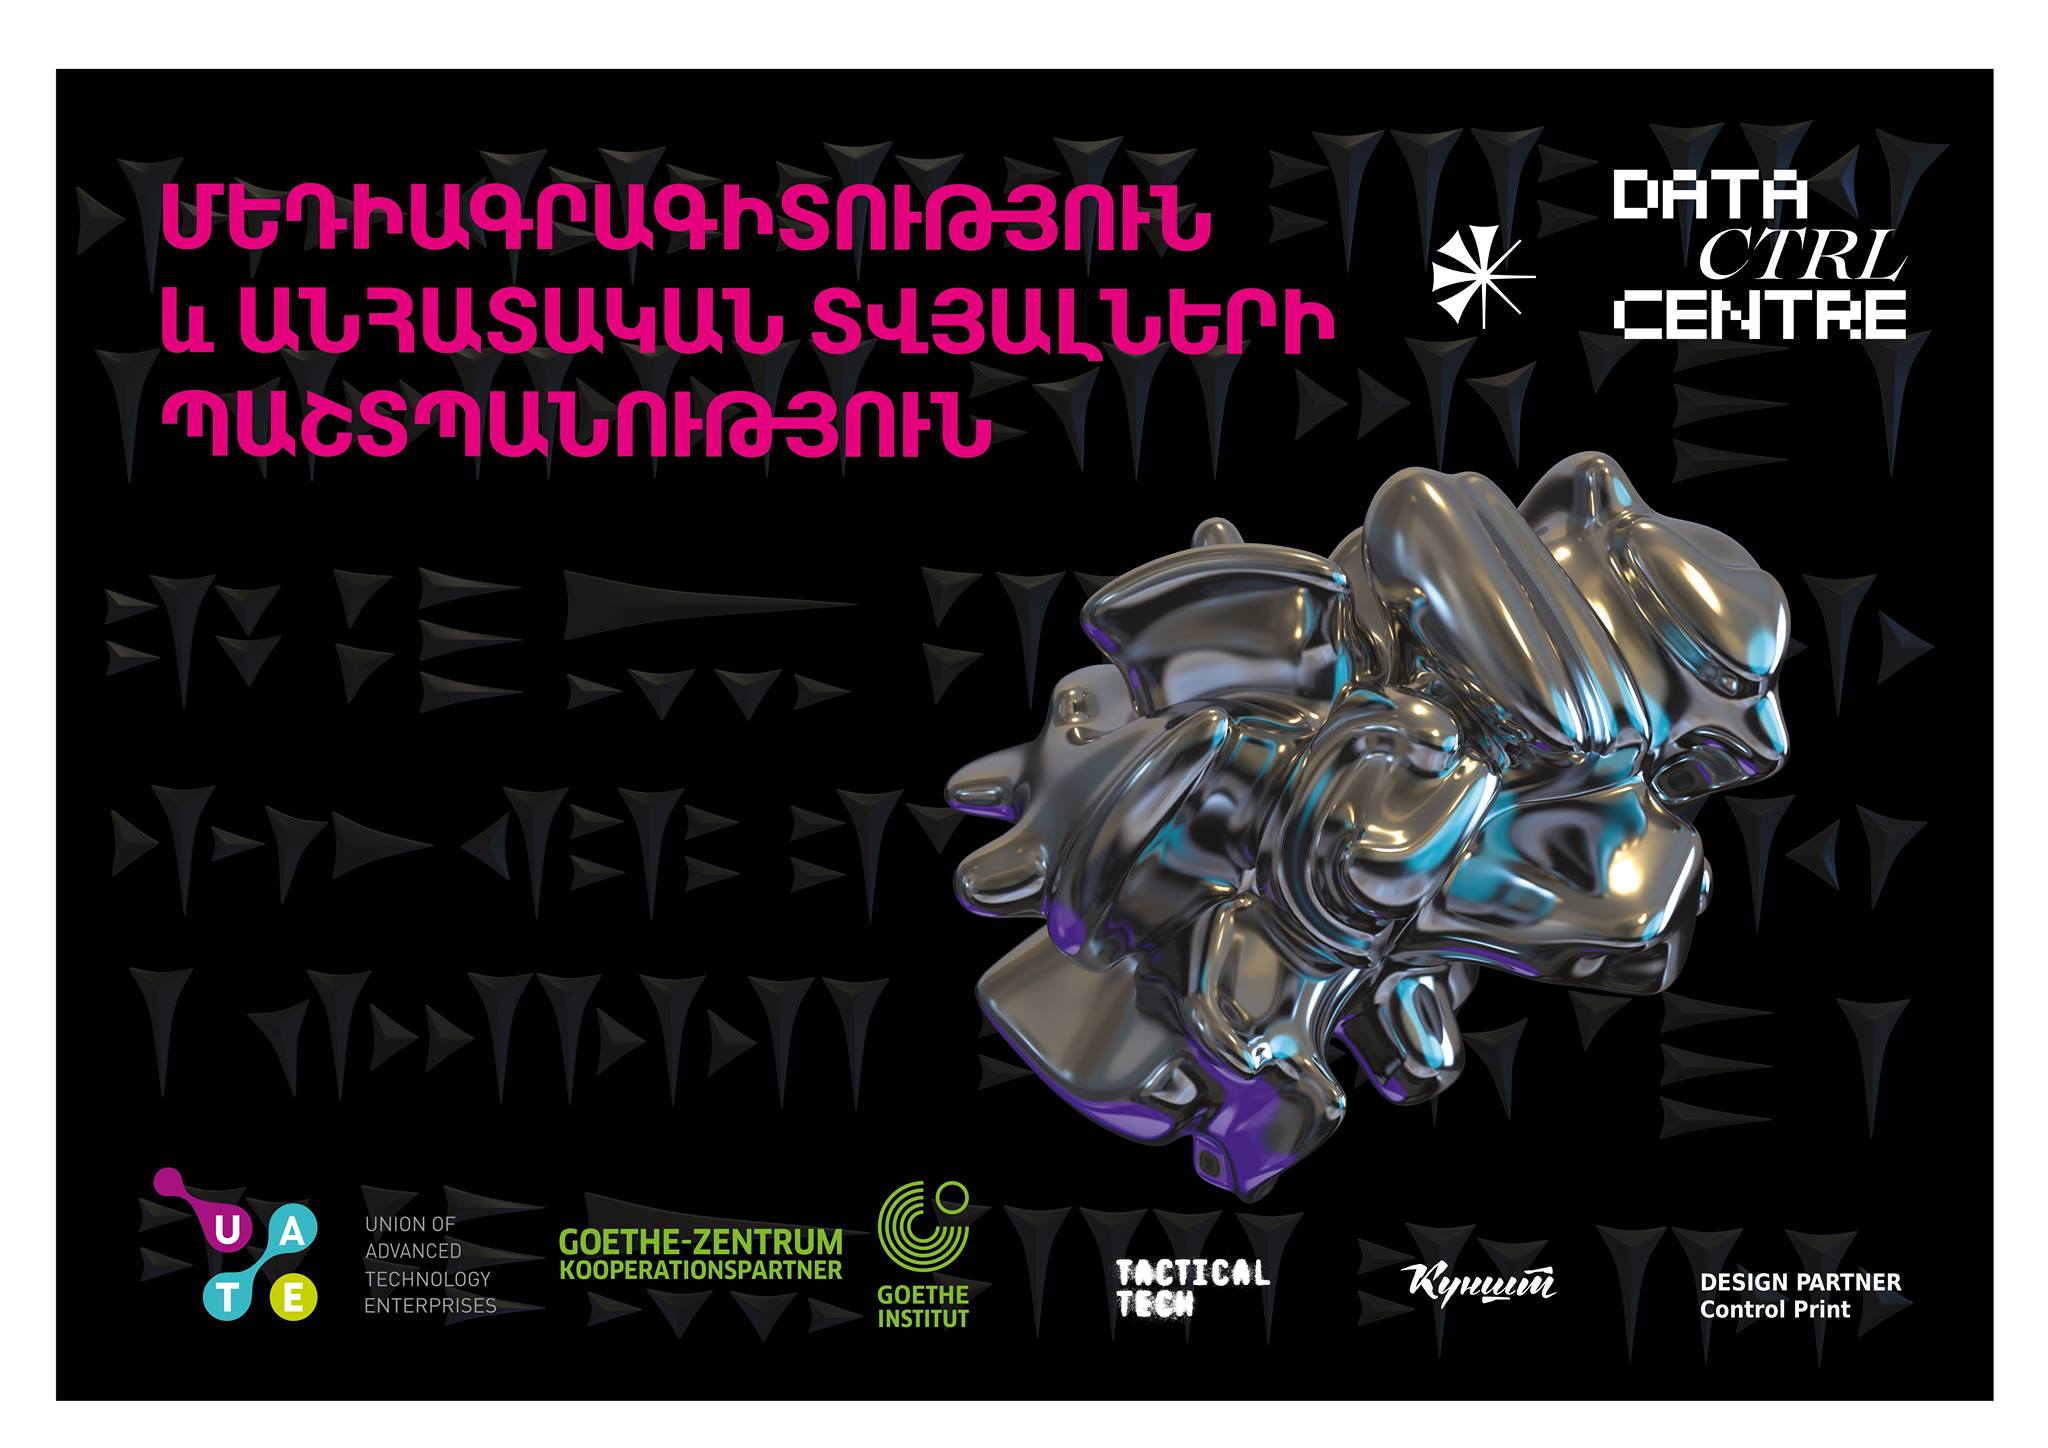 Ausstellung „Data CTRL Center“